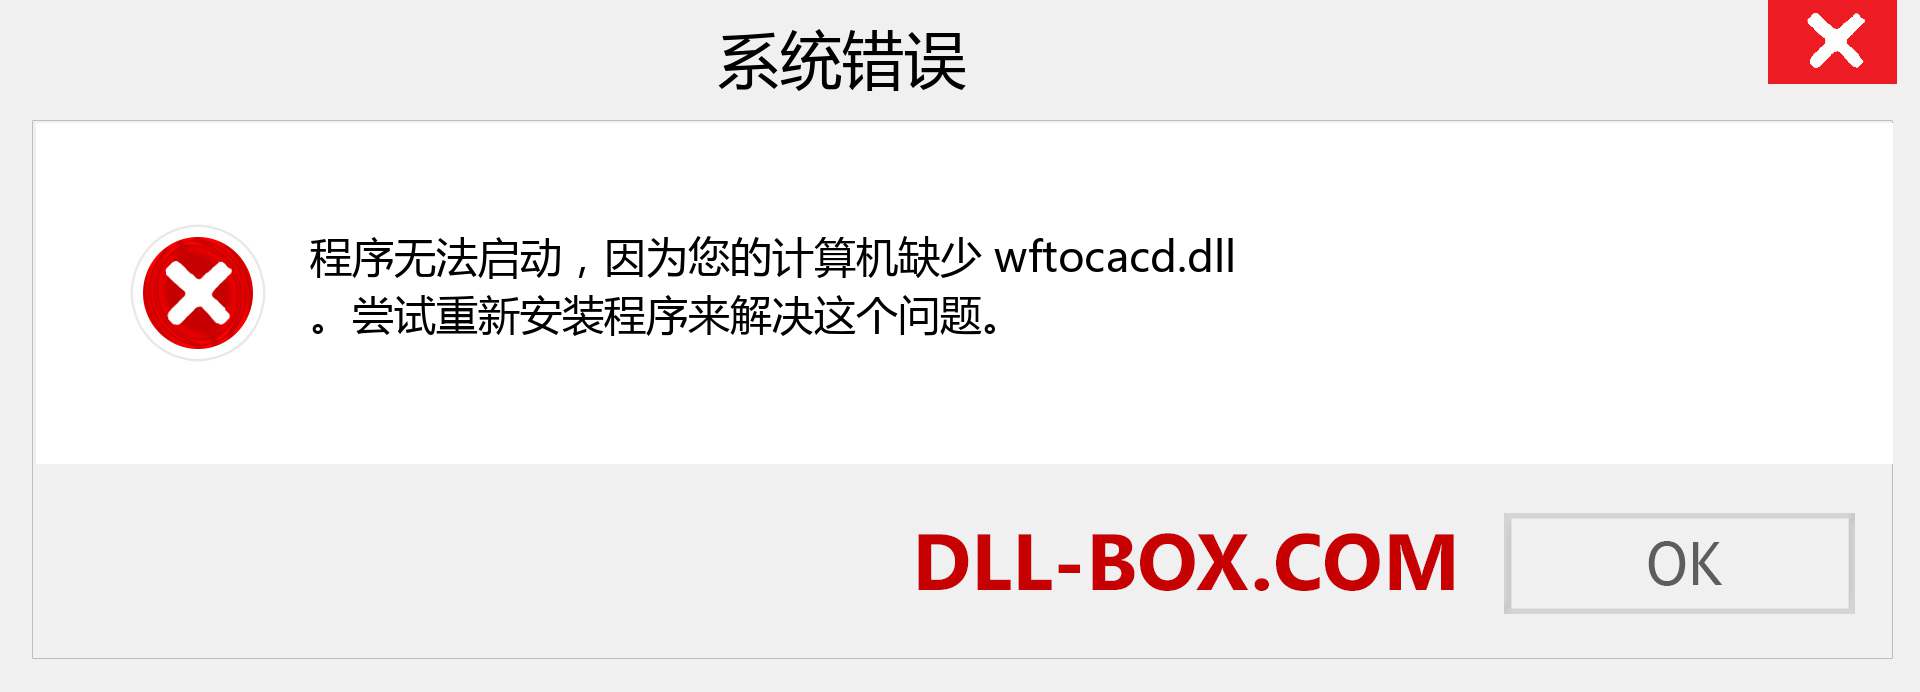 wftocacd.dll 文件丢失？。 适用于 Windows 7、8、10 的下载 - 修复 Windows、照片、图像上的 wftocacd dll 丢失错误